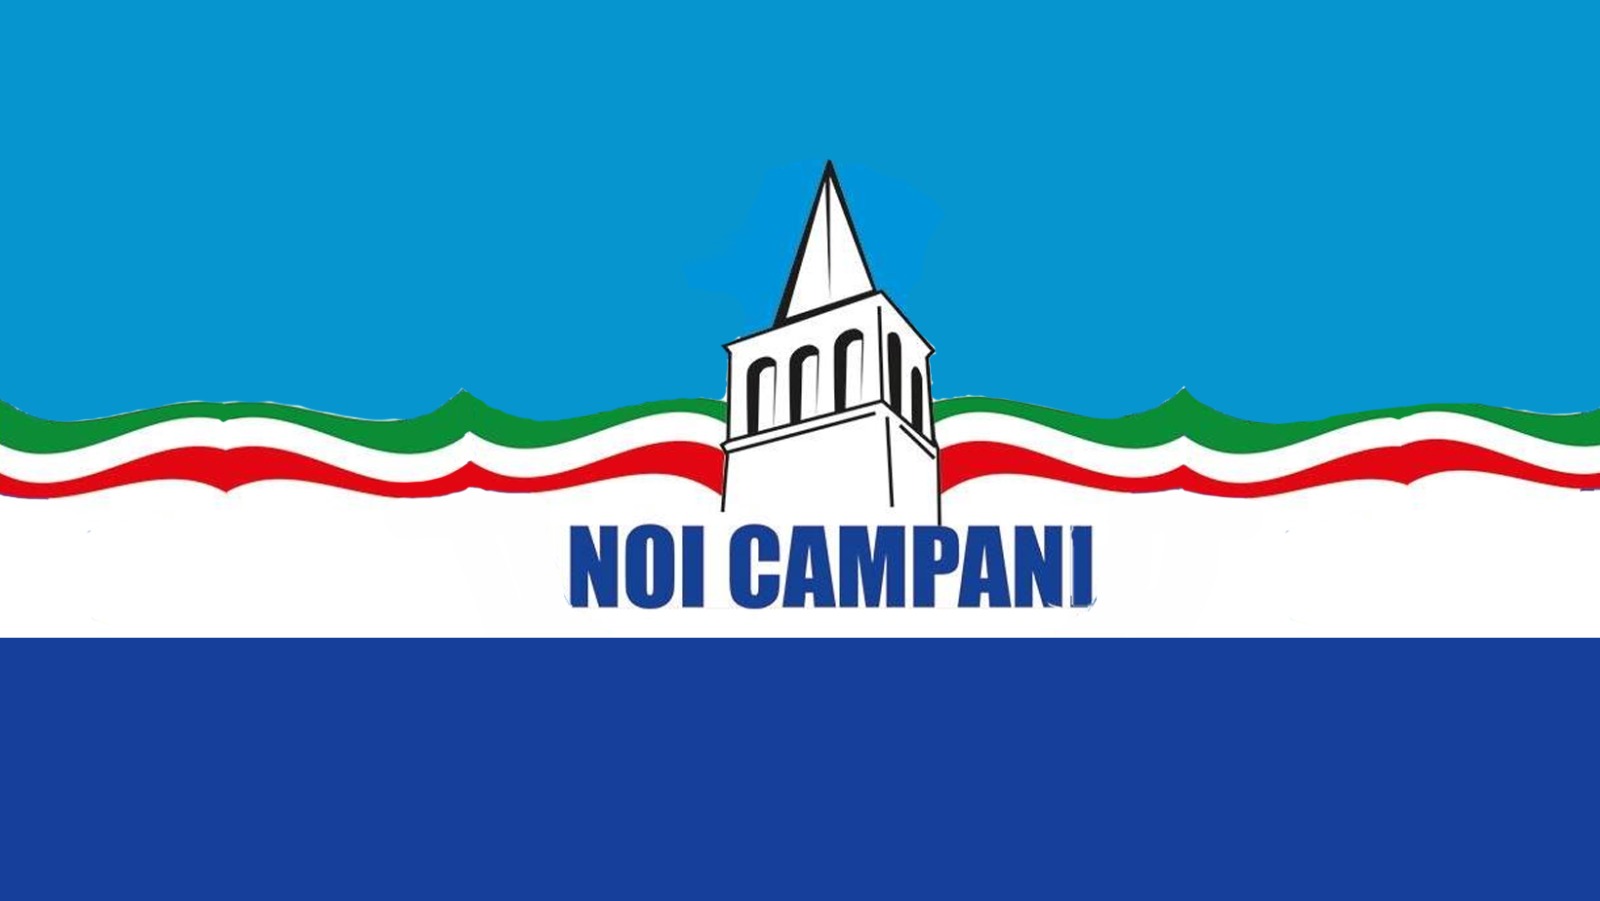 Noi Campani: “Benevento è diventata in 5 anni una città più vivibile. Perifano procede come un treno fuori binario”